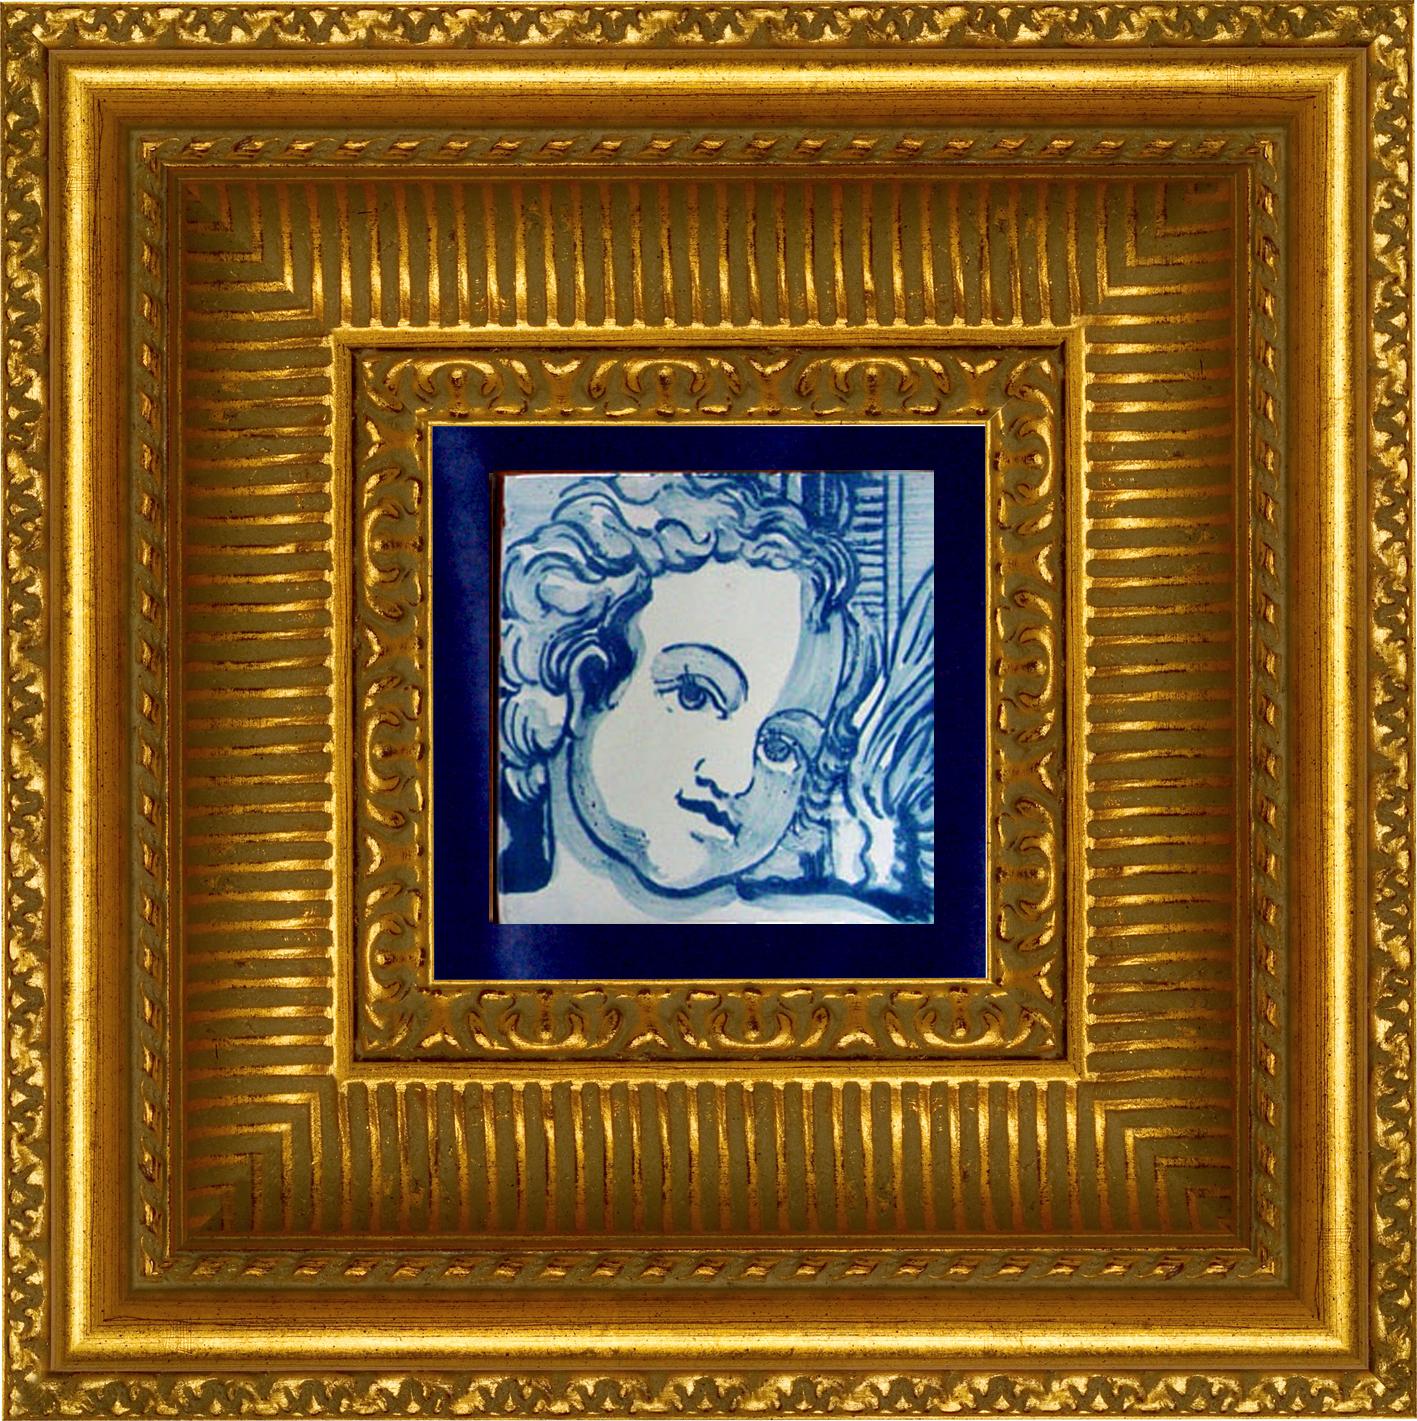 Superbe carreau de céramique portugais ou azulejo bleu peint à la main, de style baroque, représentant un ange ou un chérubin, datant du 18e siècle
Ce carreau peint en bleu sur fond blanc, typique du Portugal du 18e siècle, a donné le goût des